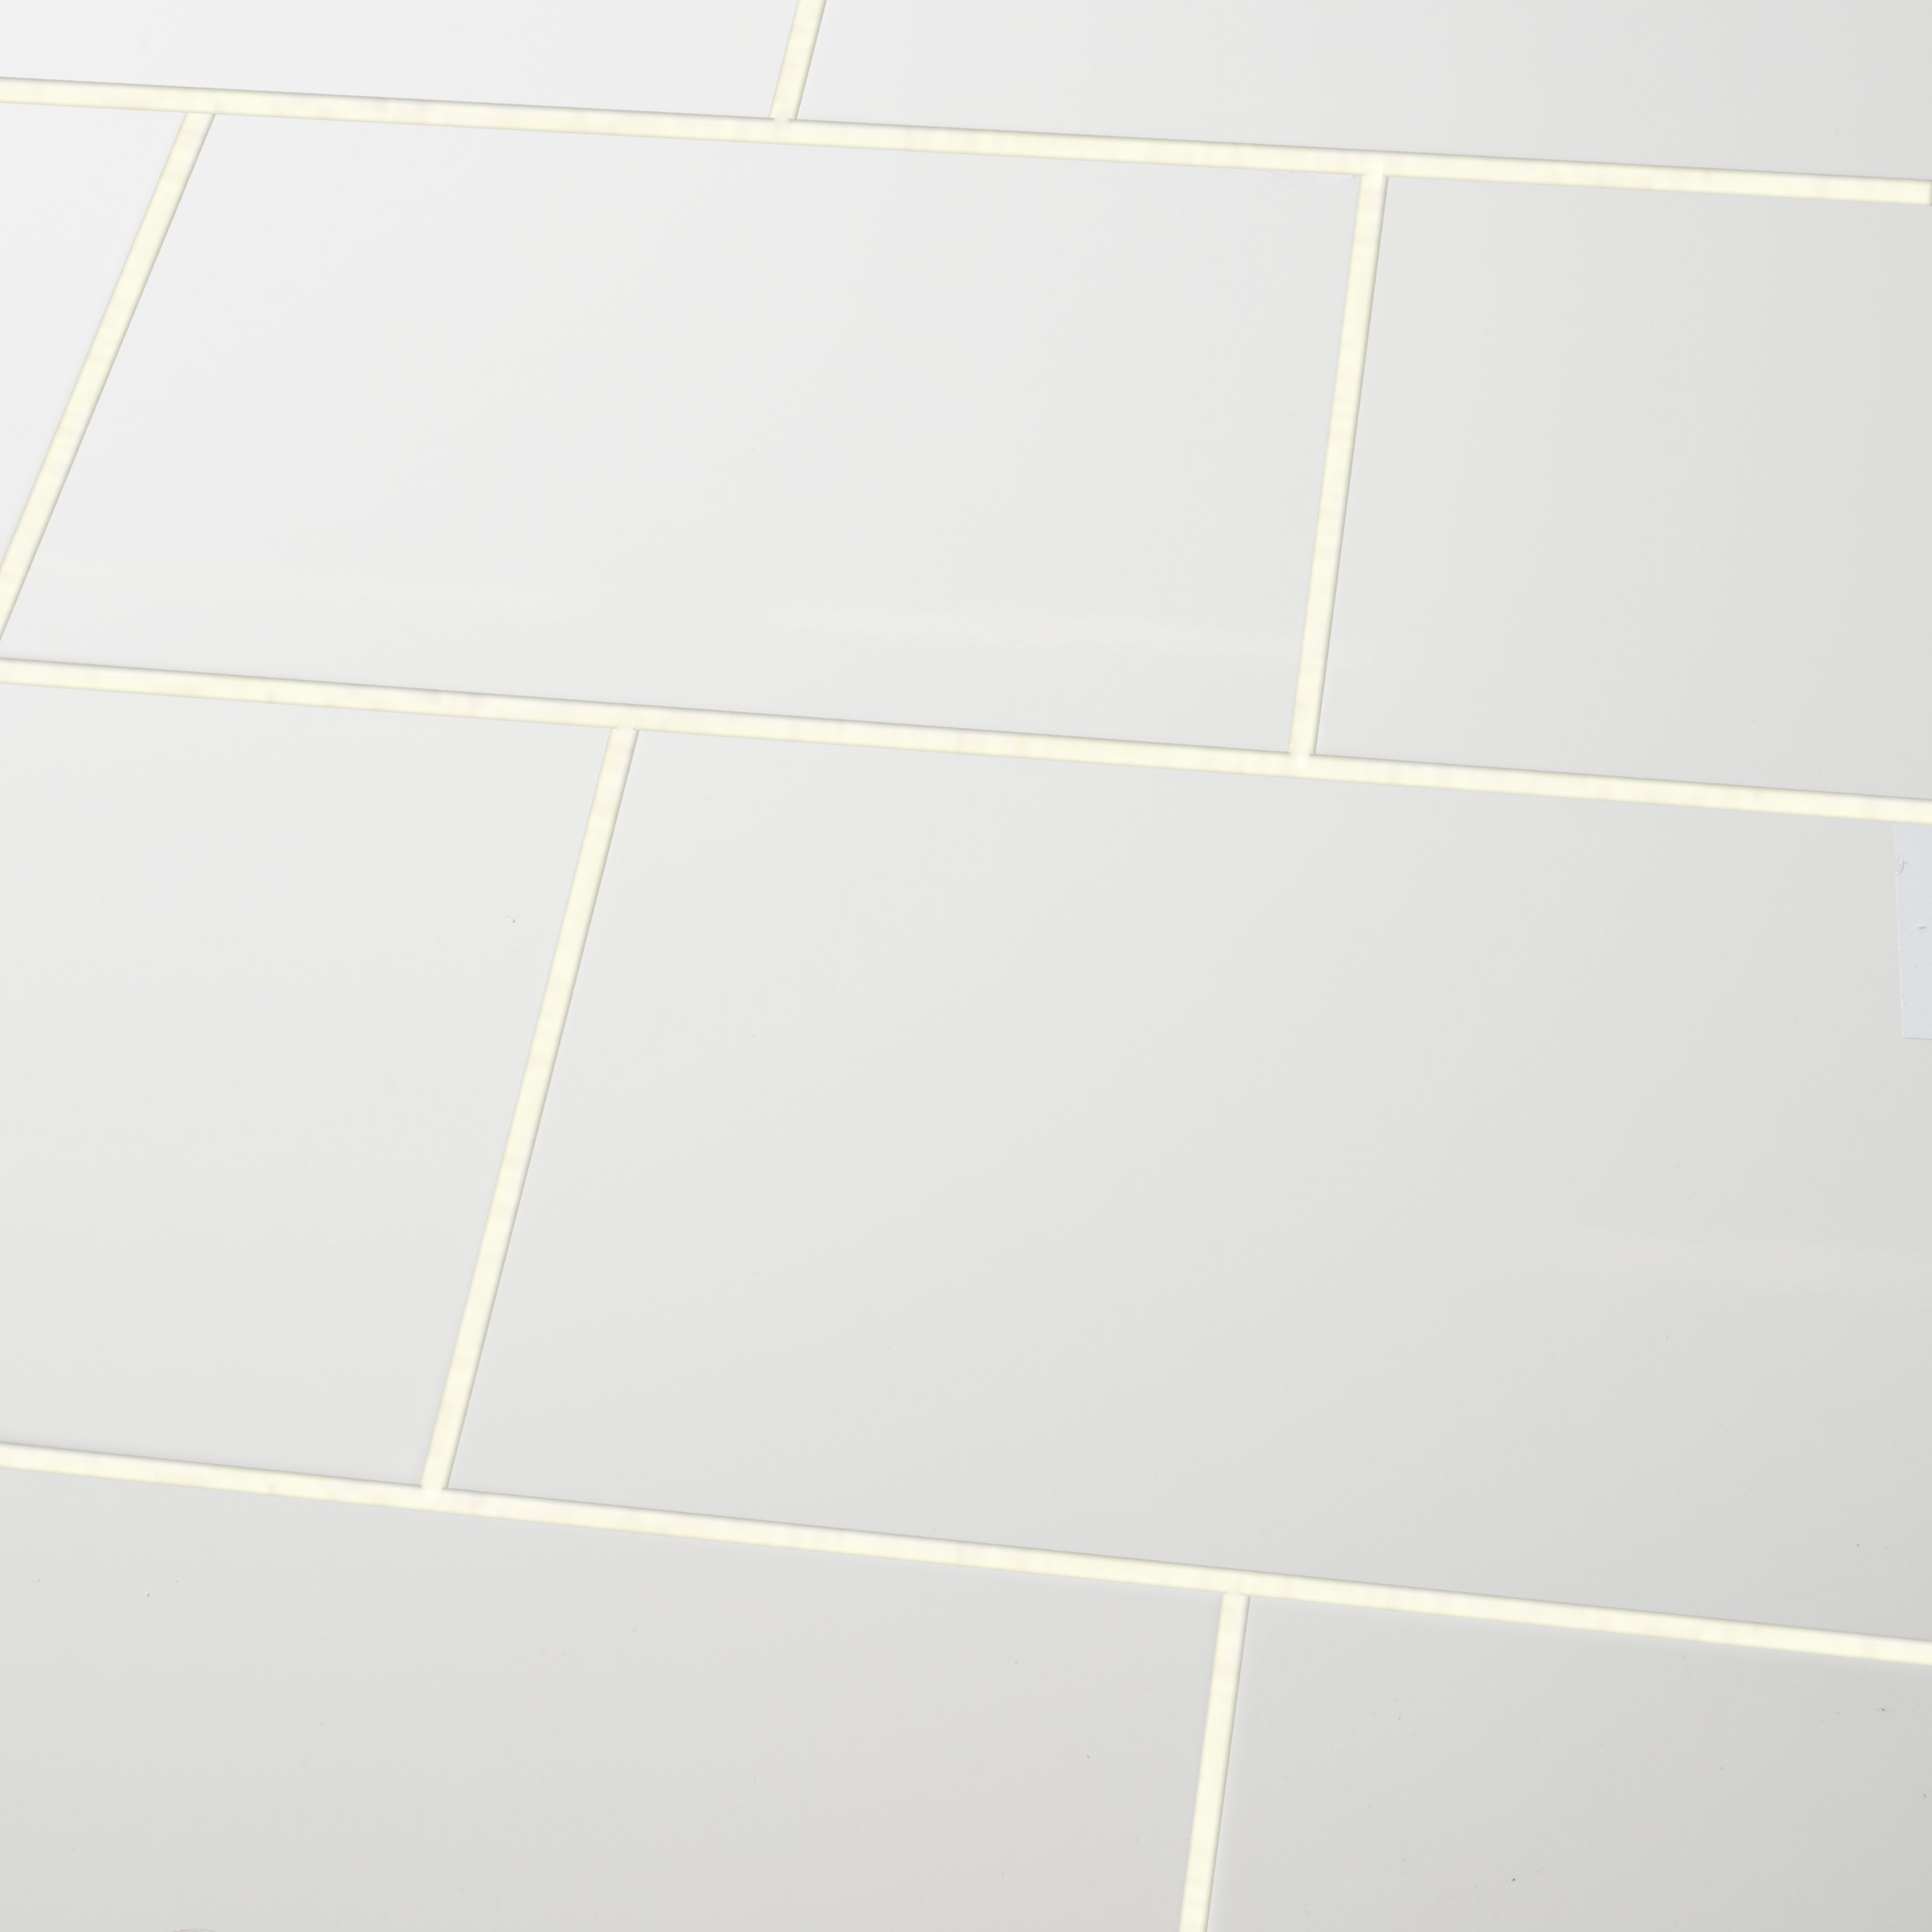 Alexandrina White Gloss Decor Ceramic Wall Tile, Pack of 10, (L)402.4mm (W)251.6mm